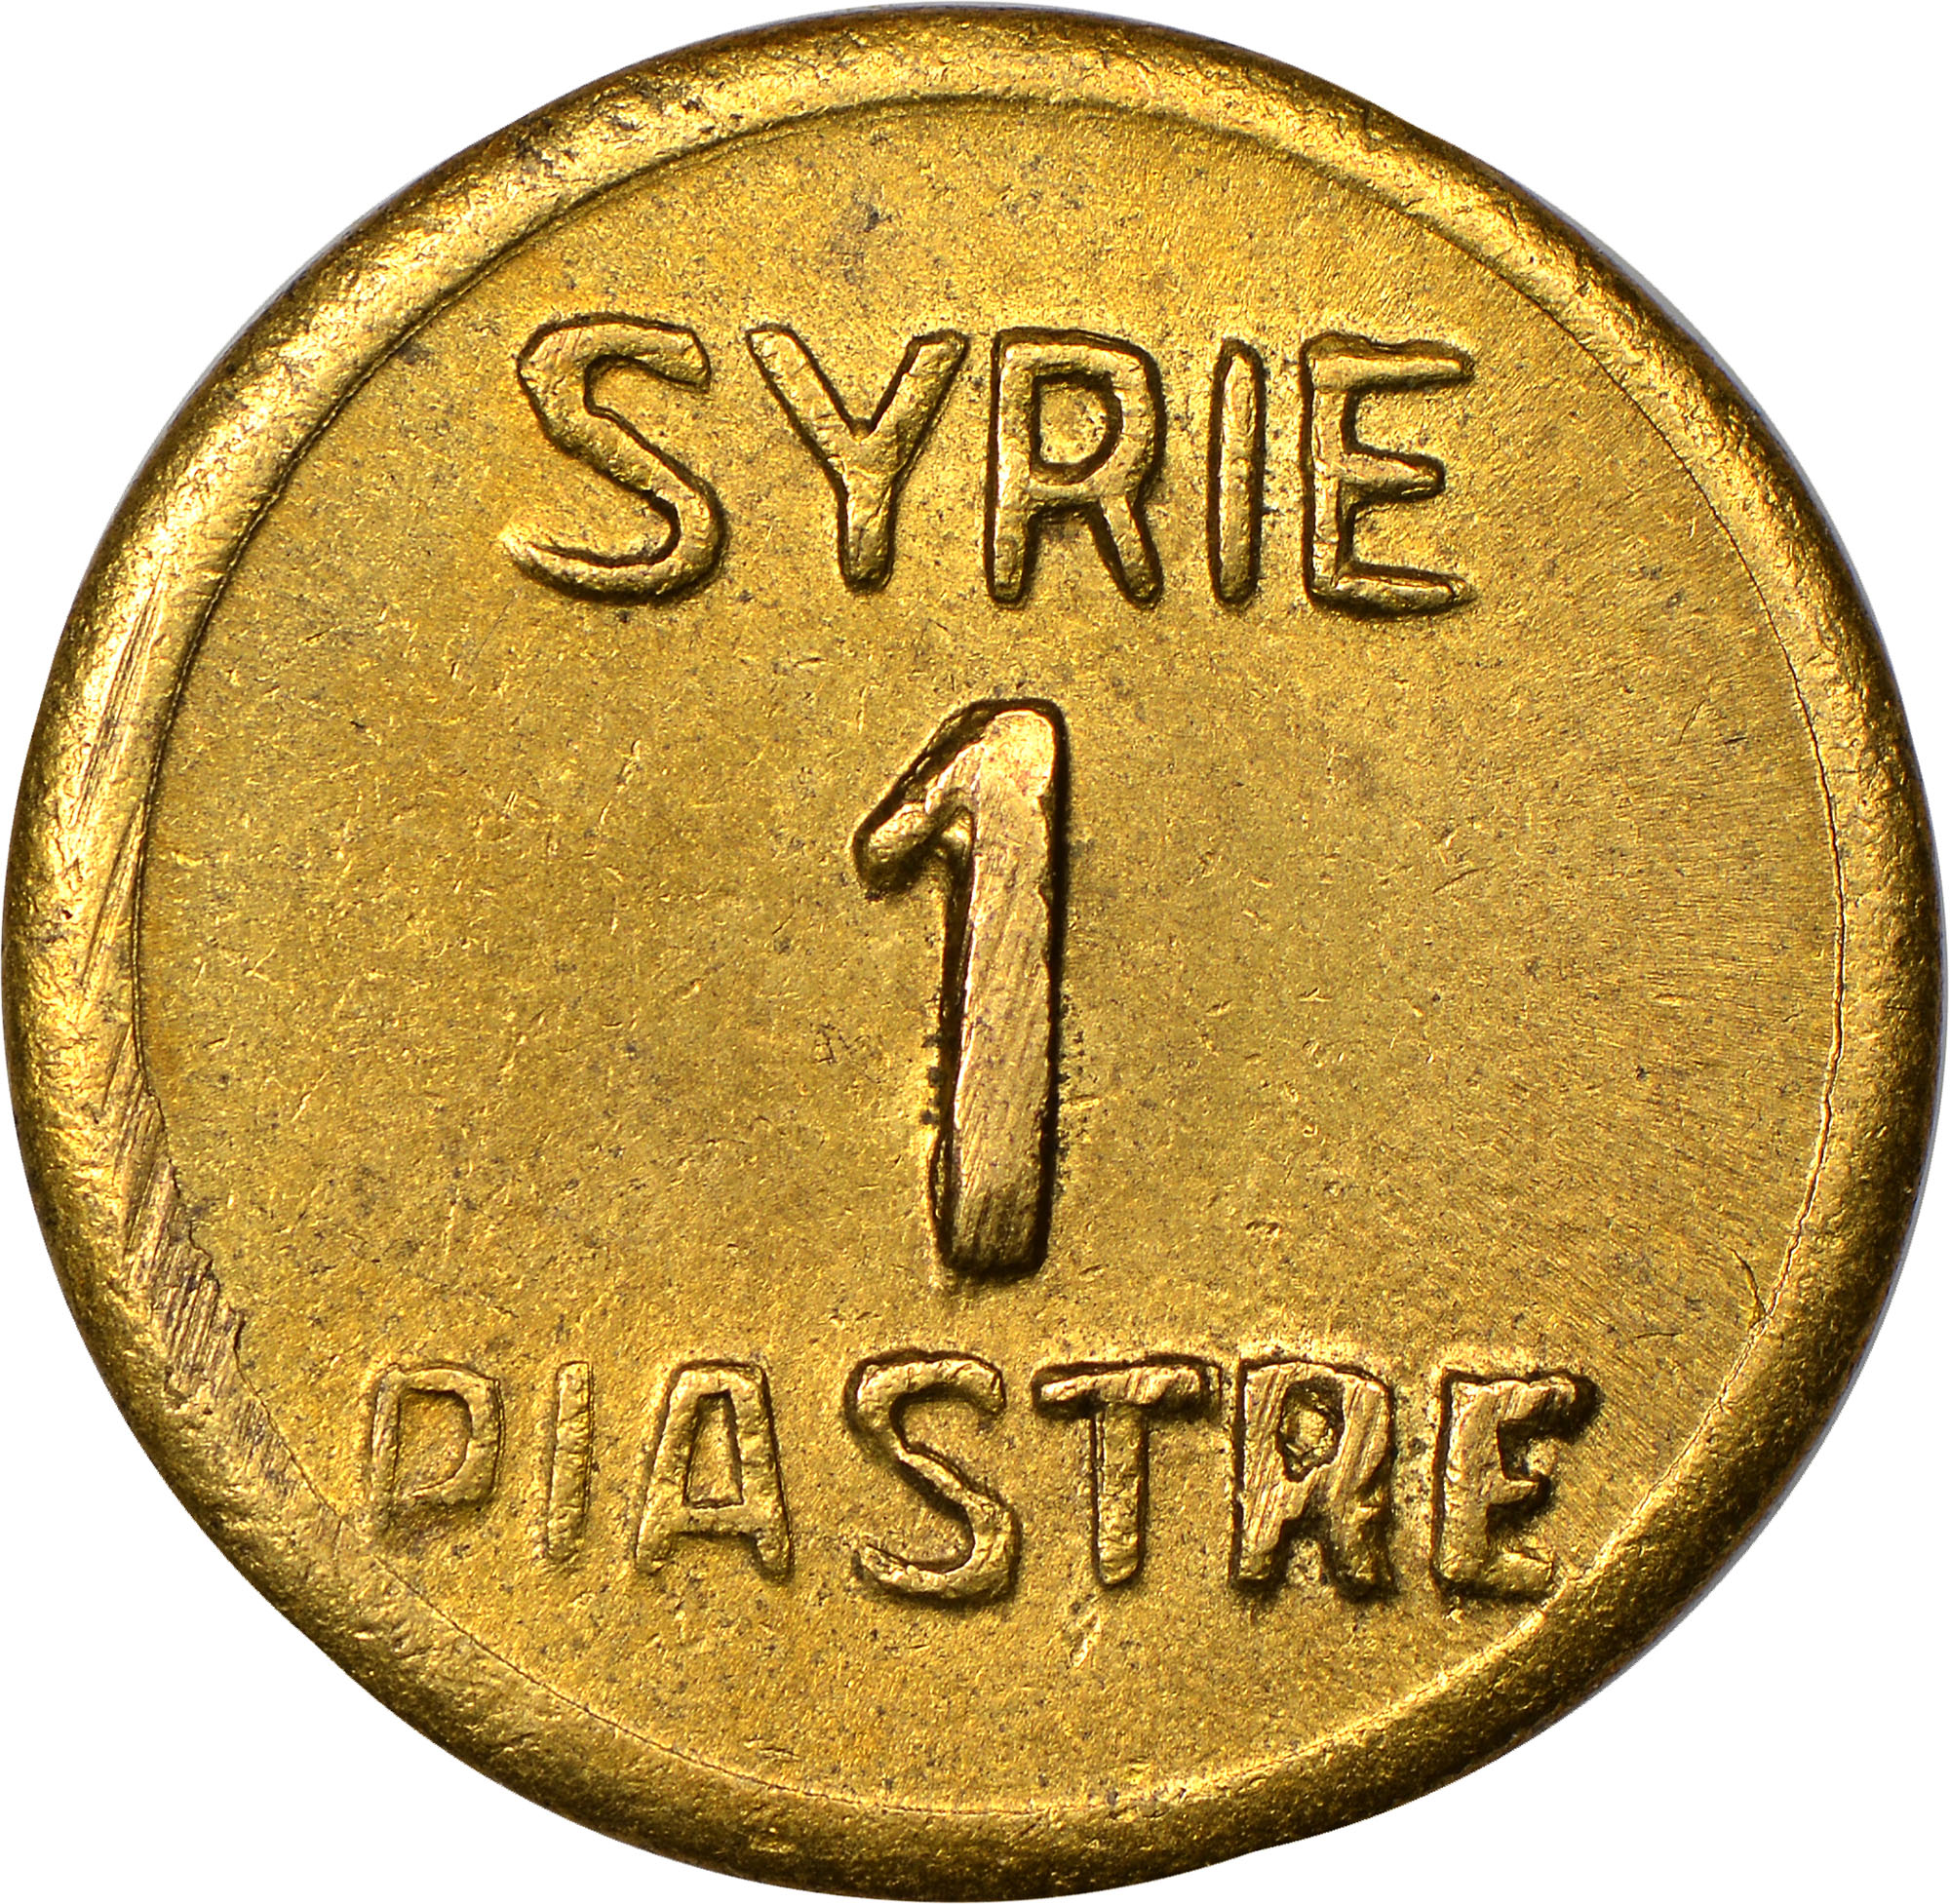 التاريخ السوري المعاصر - النقود والعملات السورية 1941 – قرش سوري واحد (A)